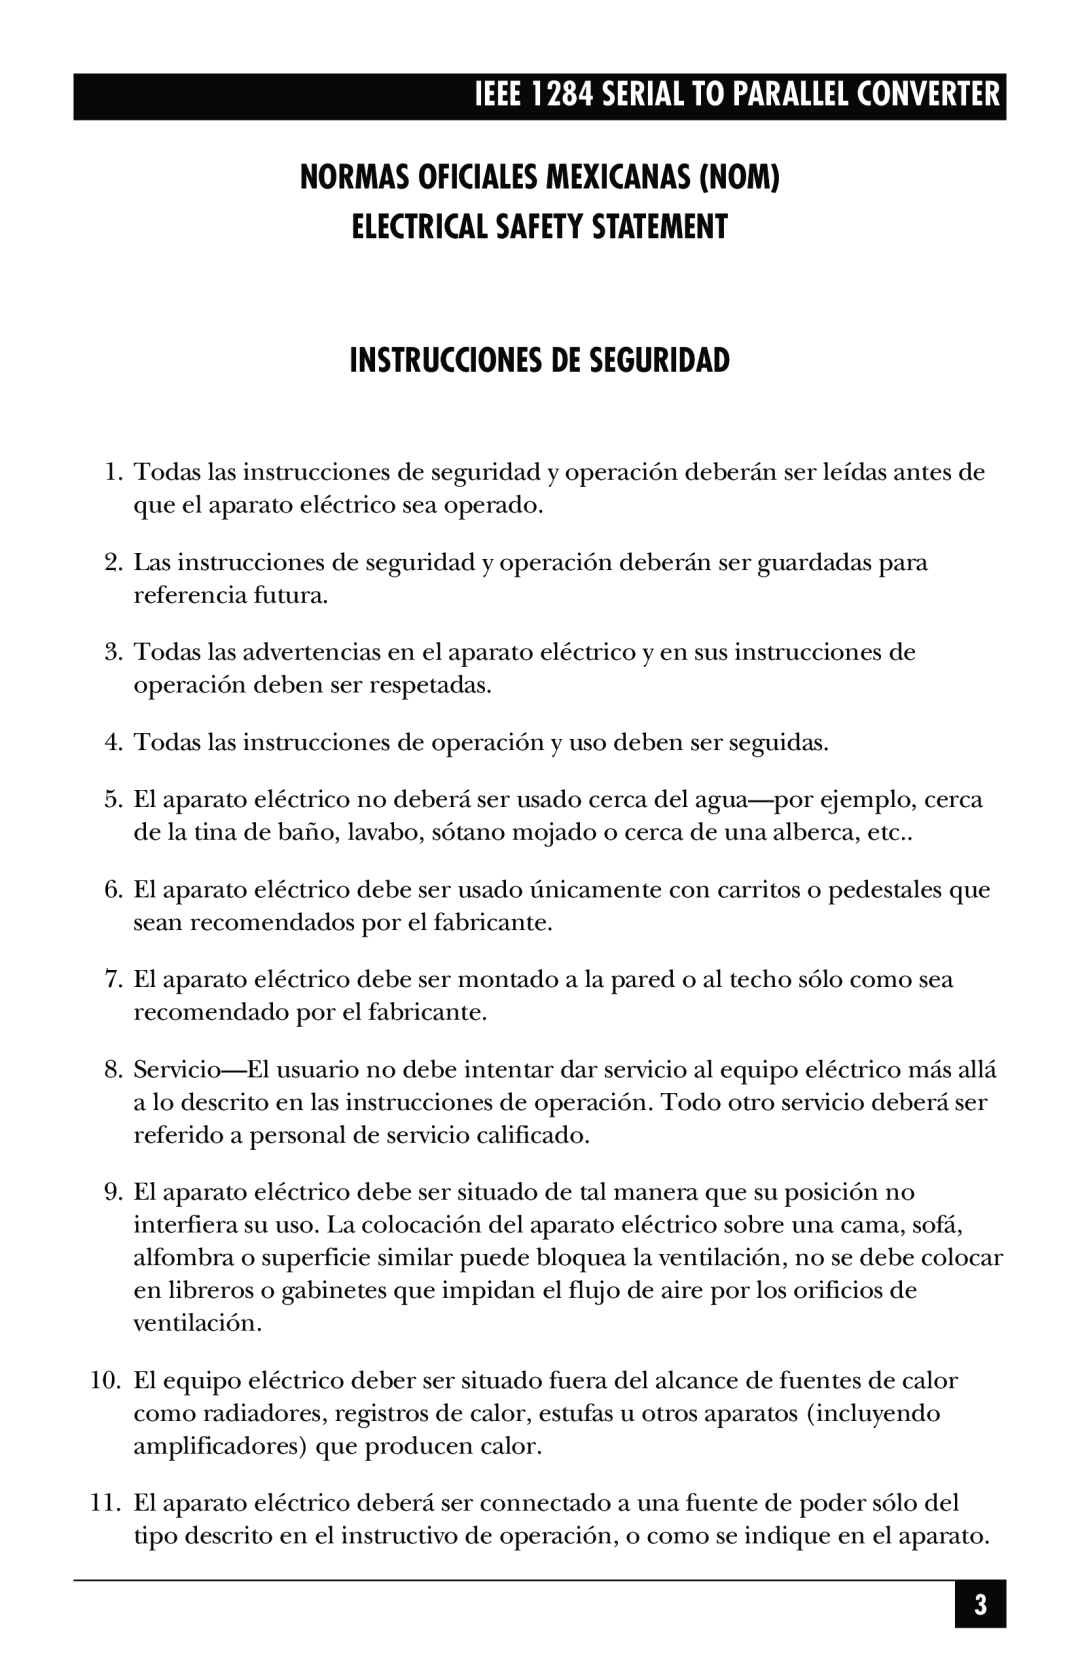 Black Box IEEE 1284 manual Normas Oficiales Mexicanas Nom, Electrical Safety Statement, Instrucciones De Seguridad 